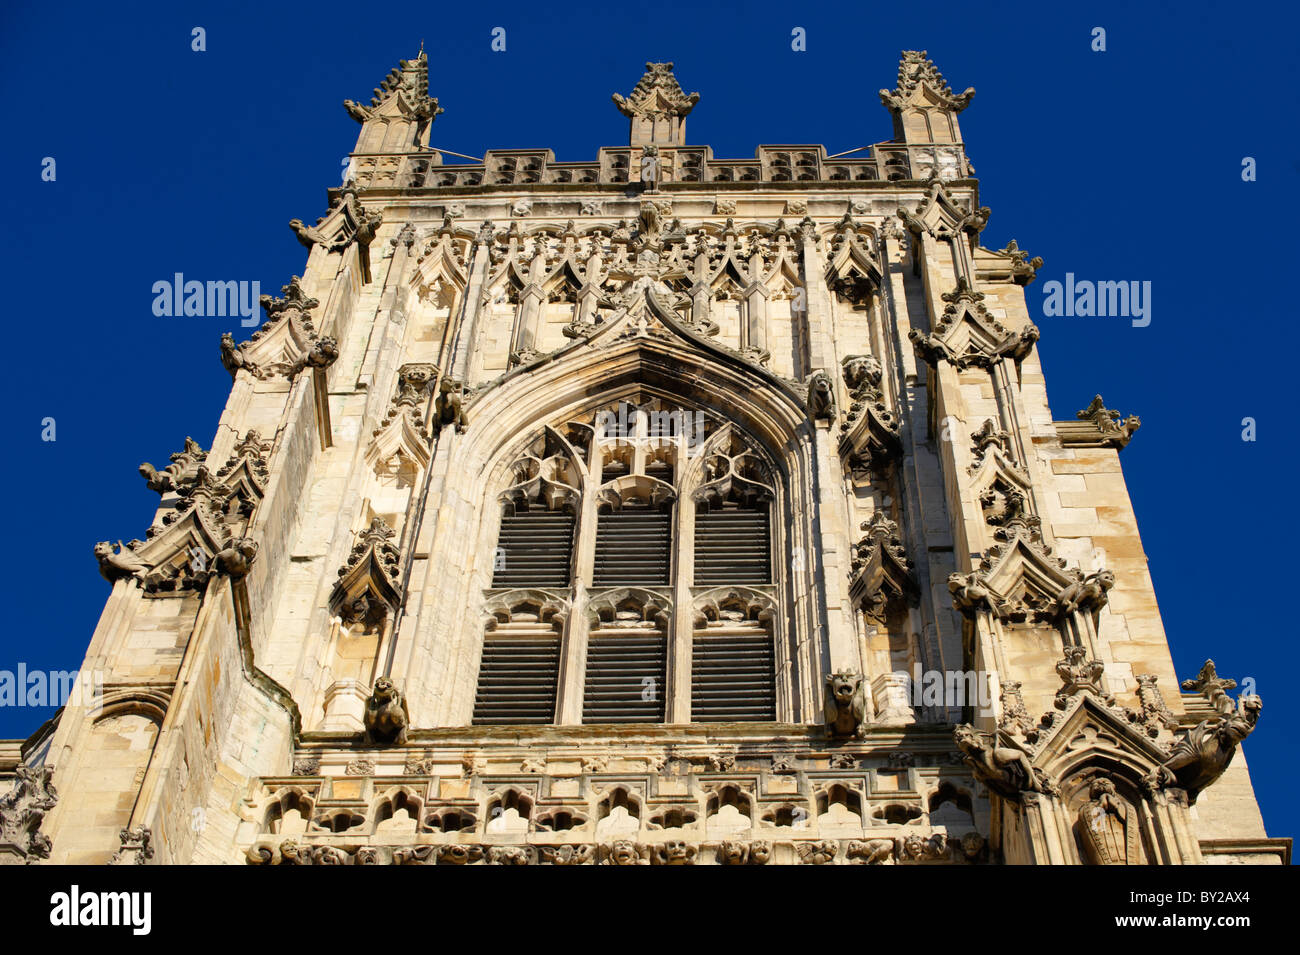 L'architecture gothique à l'extérieur de la cathédrale et l'église de Saint Pierre Metropolitical à York, communément connu sous le nom de York Minster. Banque D'Images